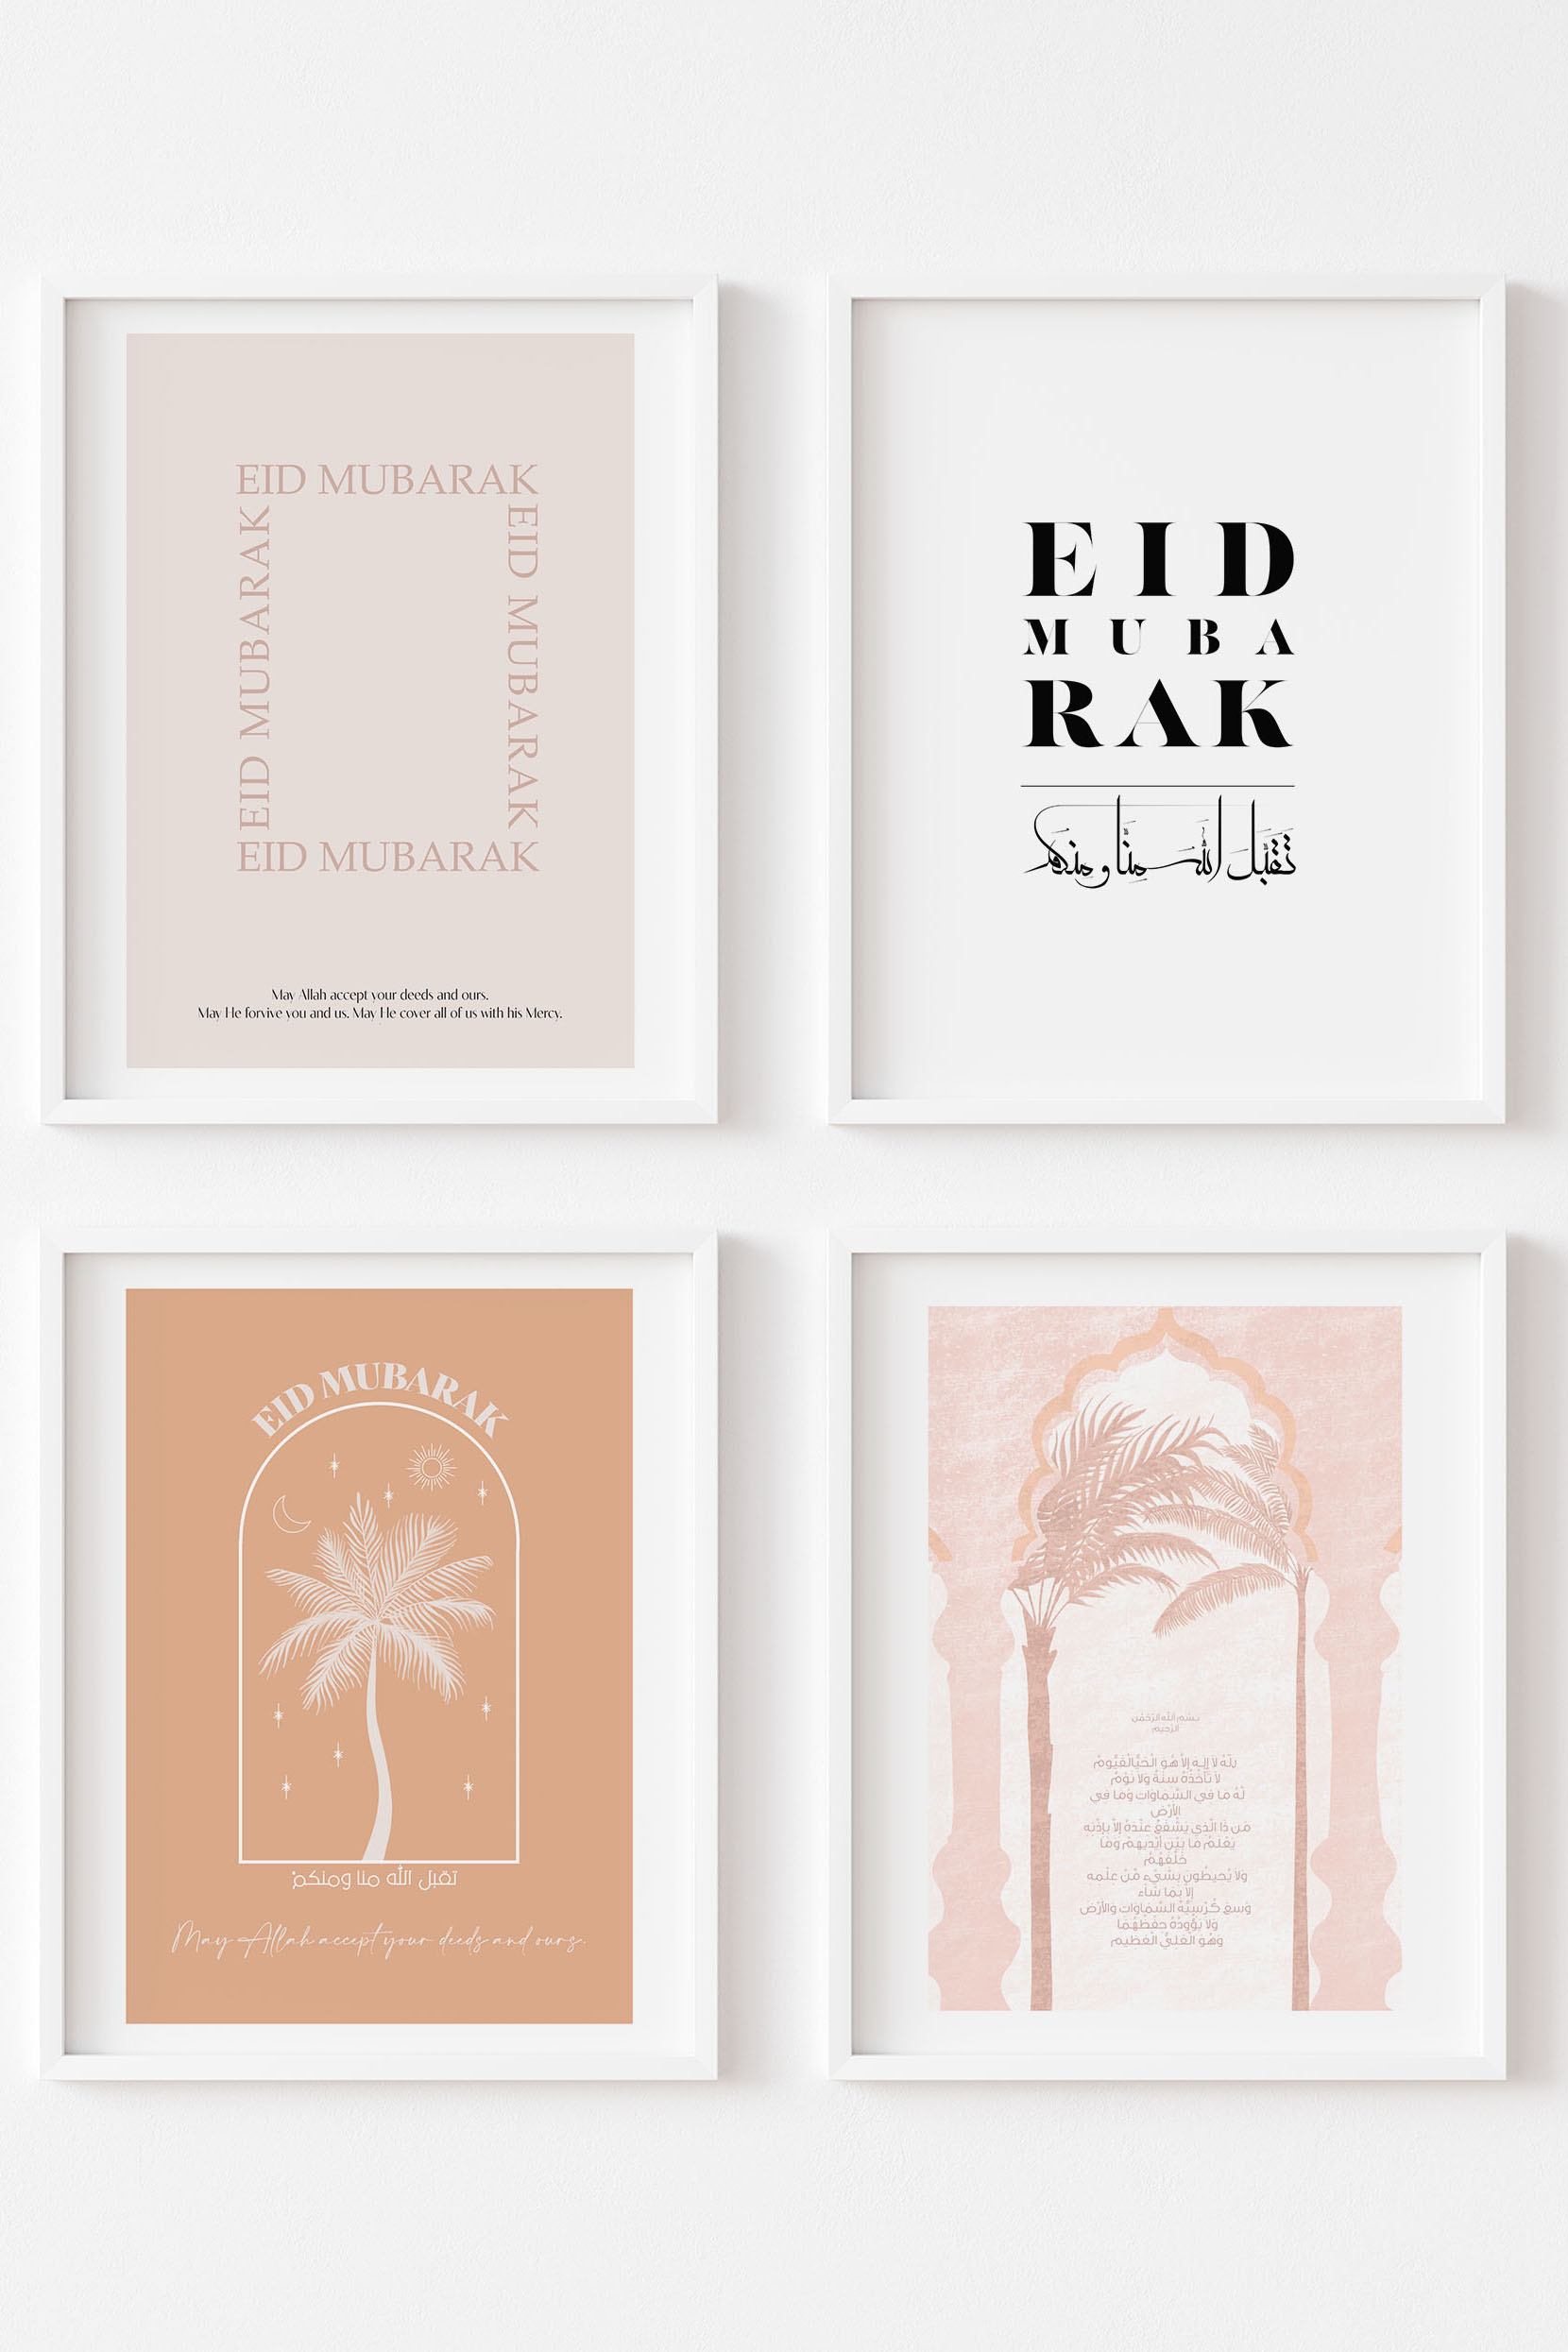 Combinaison de posters Eid image